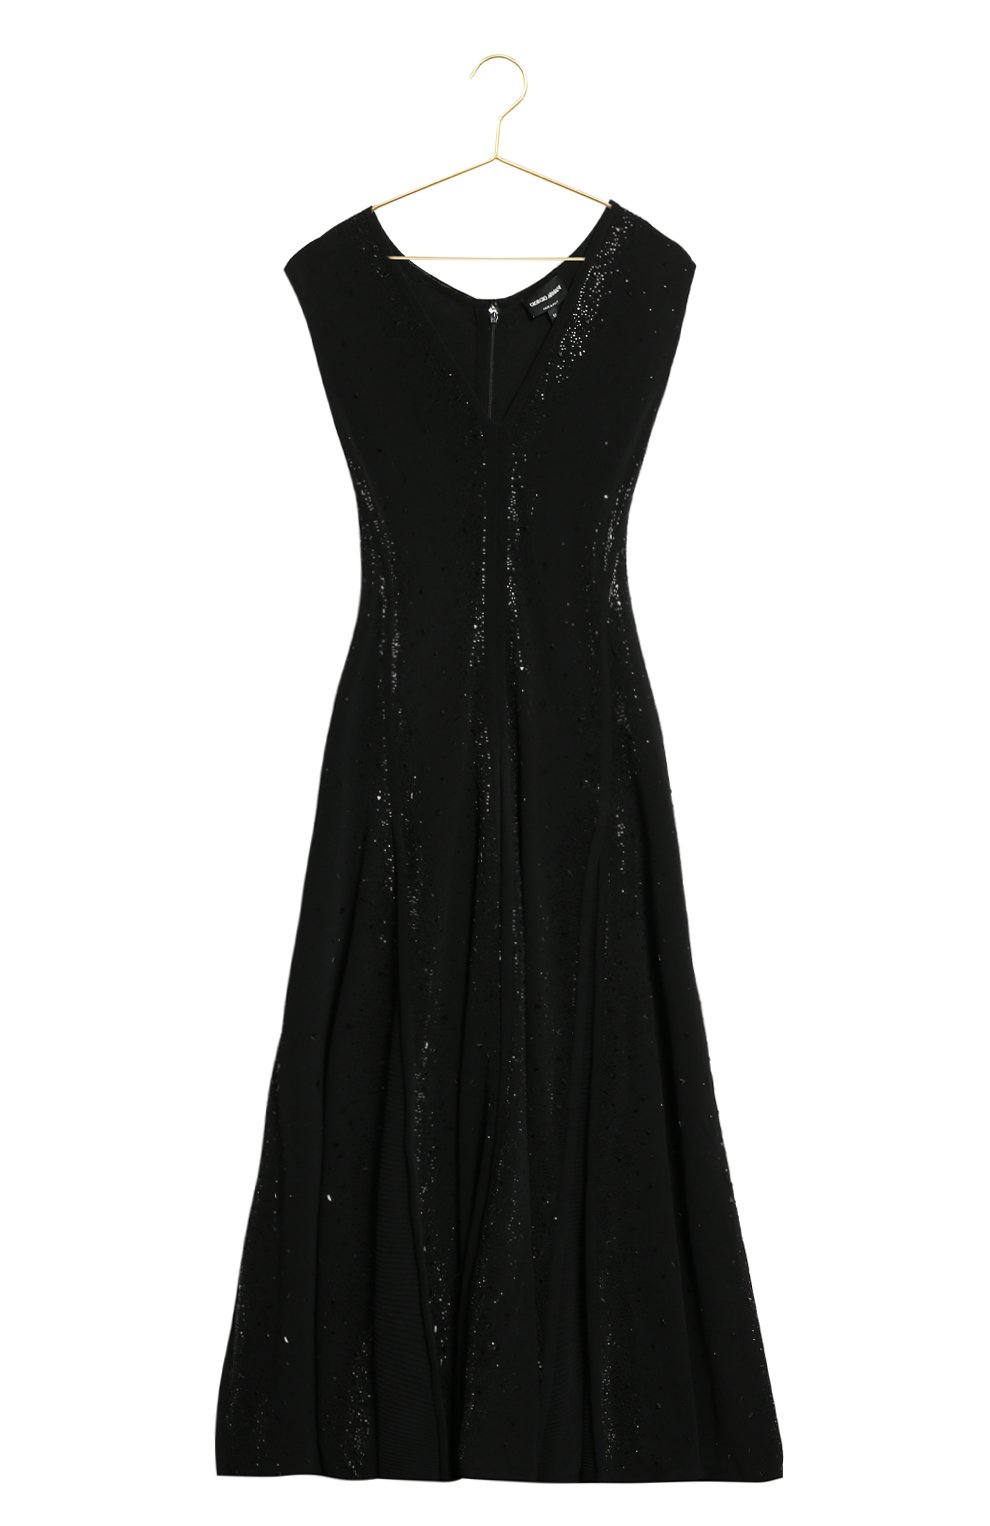 Платье из вискозы | Giorgio Armani | Чёрный - 1